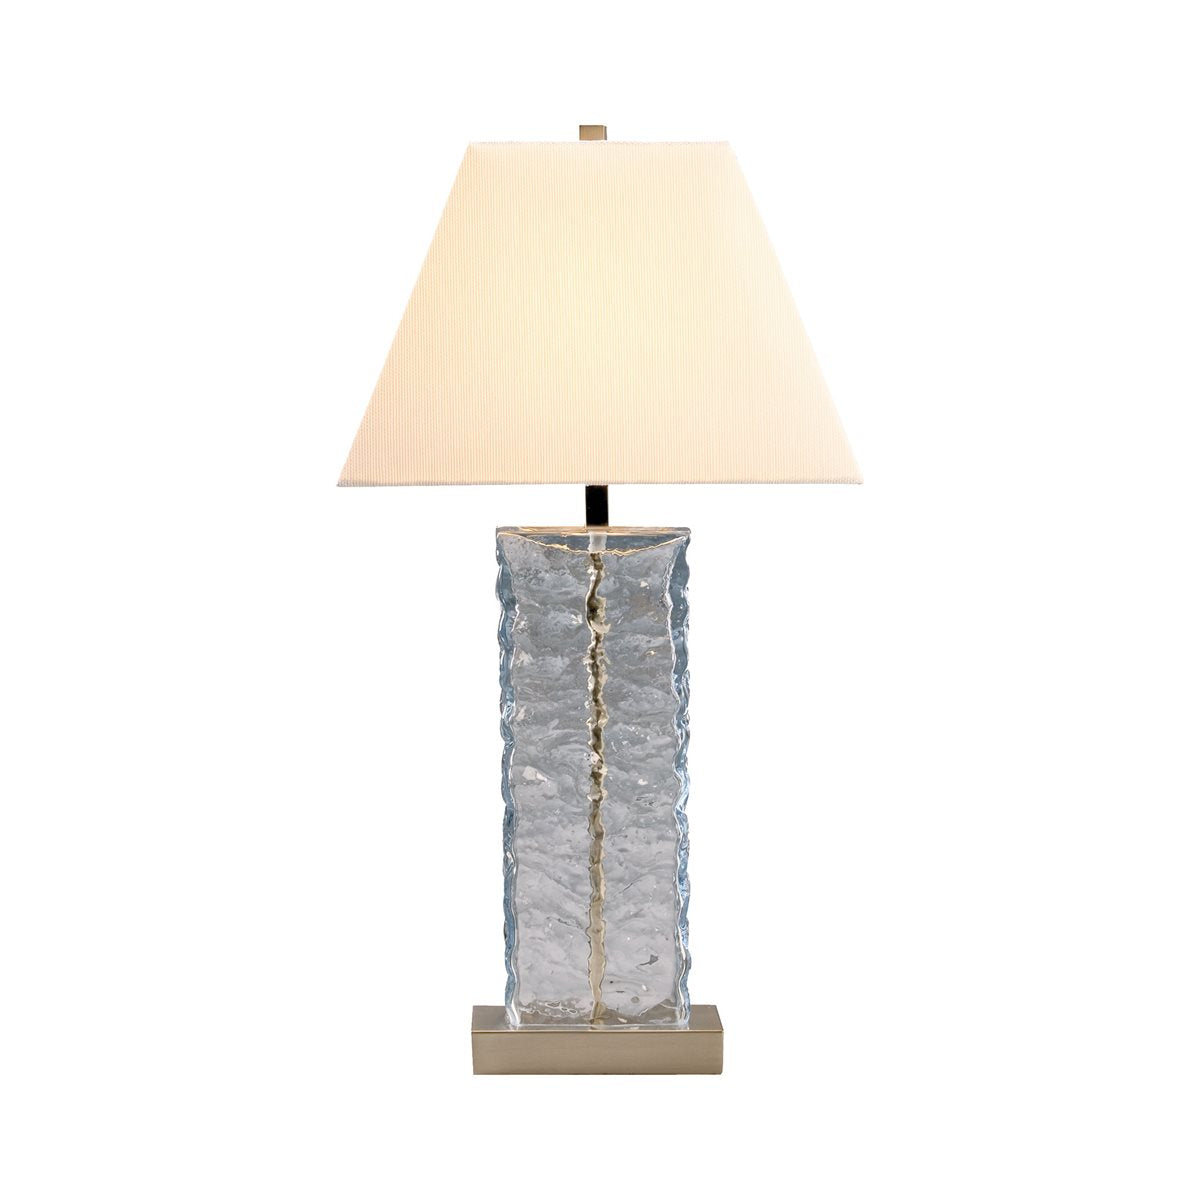 Stein World Astoria Table Lamp 97315